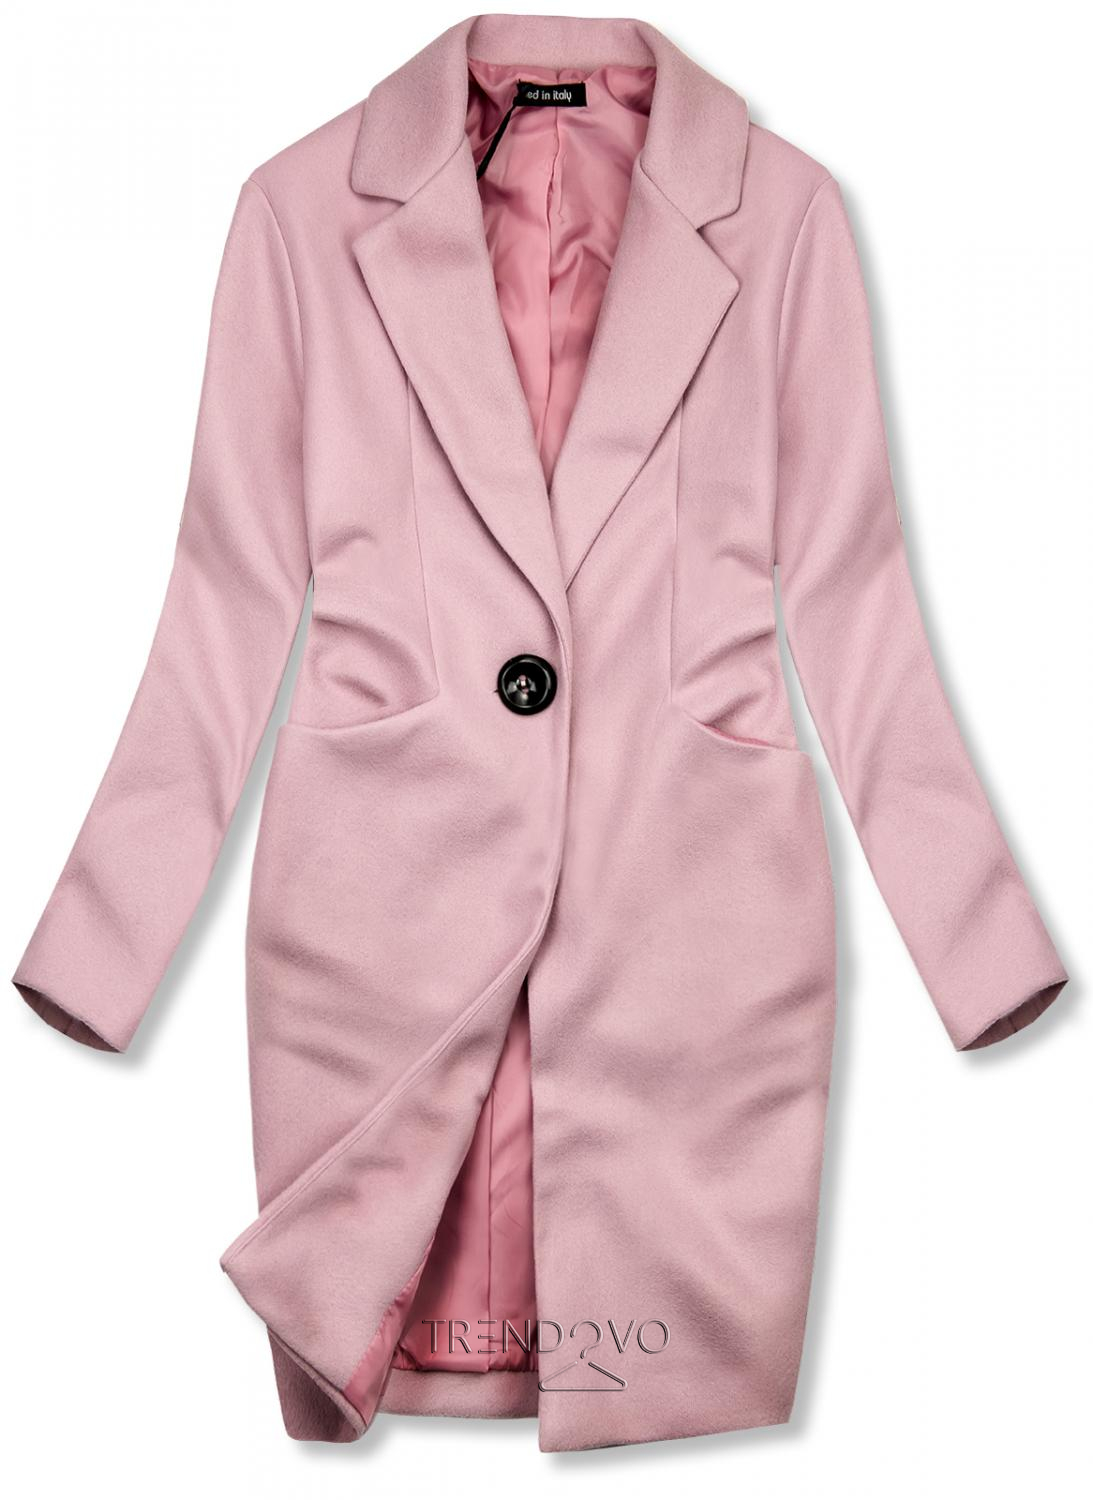 Ružový jarný kabát so zapínaním na gombík